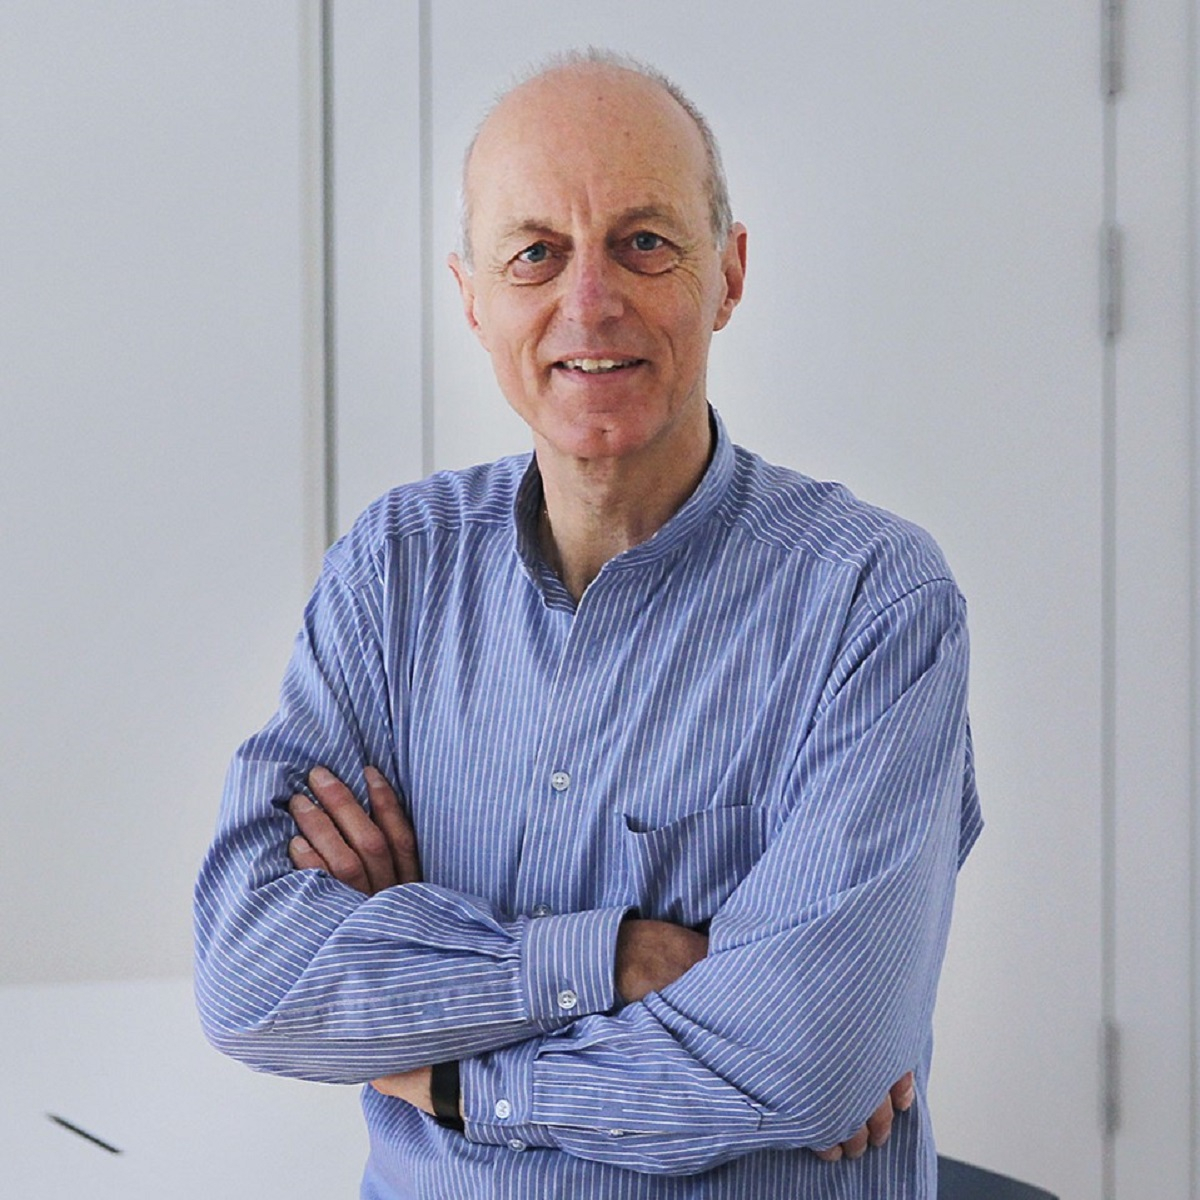 Prof. Dr. Wolfgang Ertel